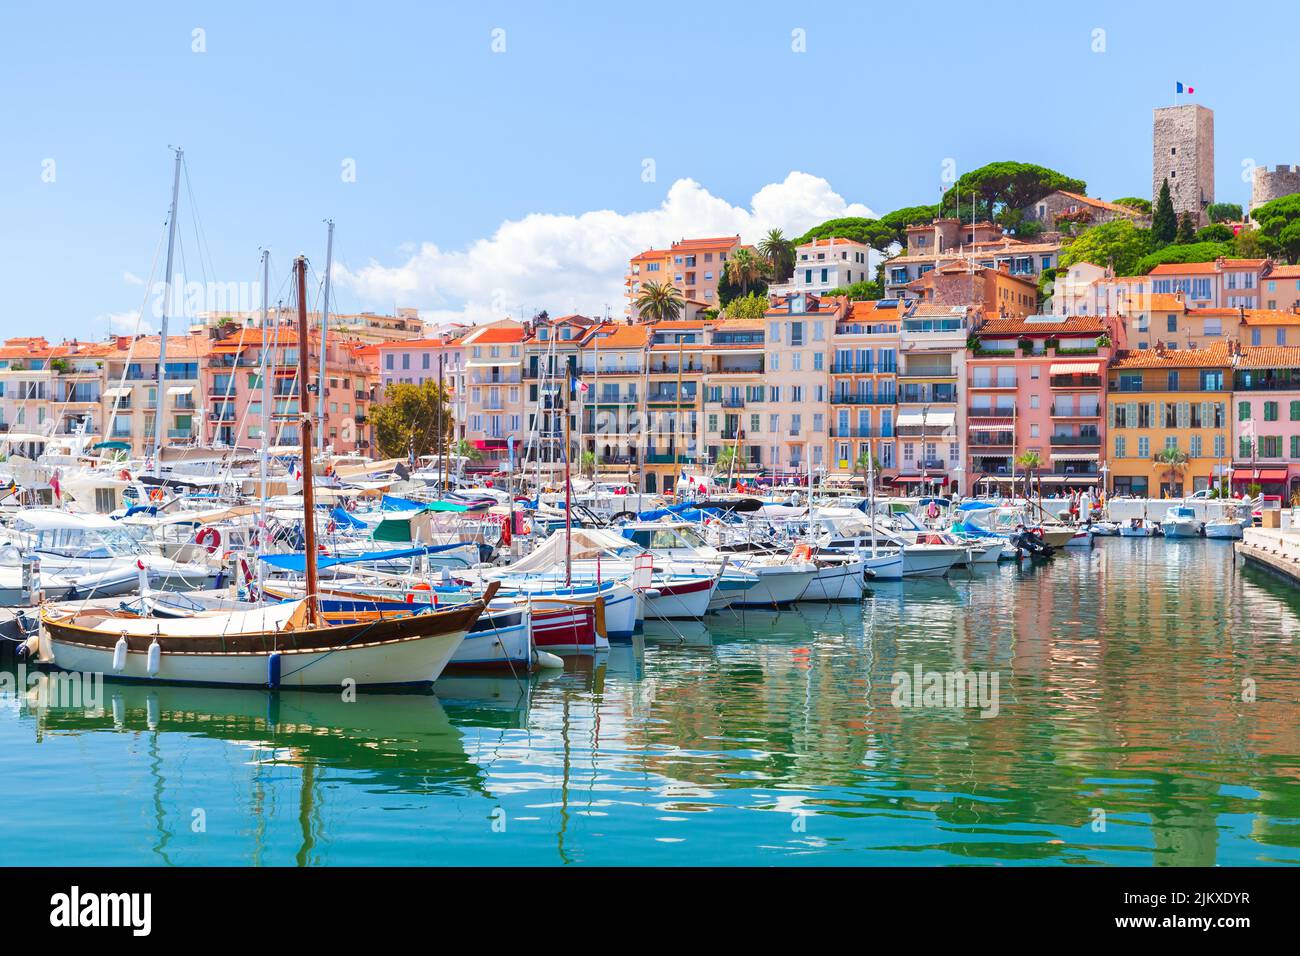 Vista del puerto deportivo de Cannes en un soleado día de verano, paisaje costero con yates amarrados y casas de colores en un fondo. Francia Foto de stock